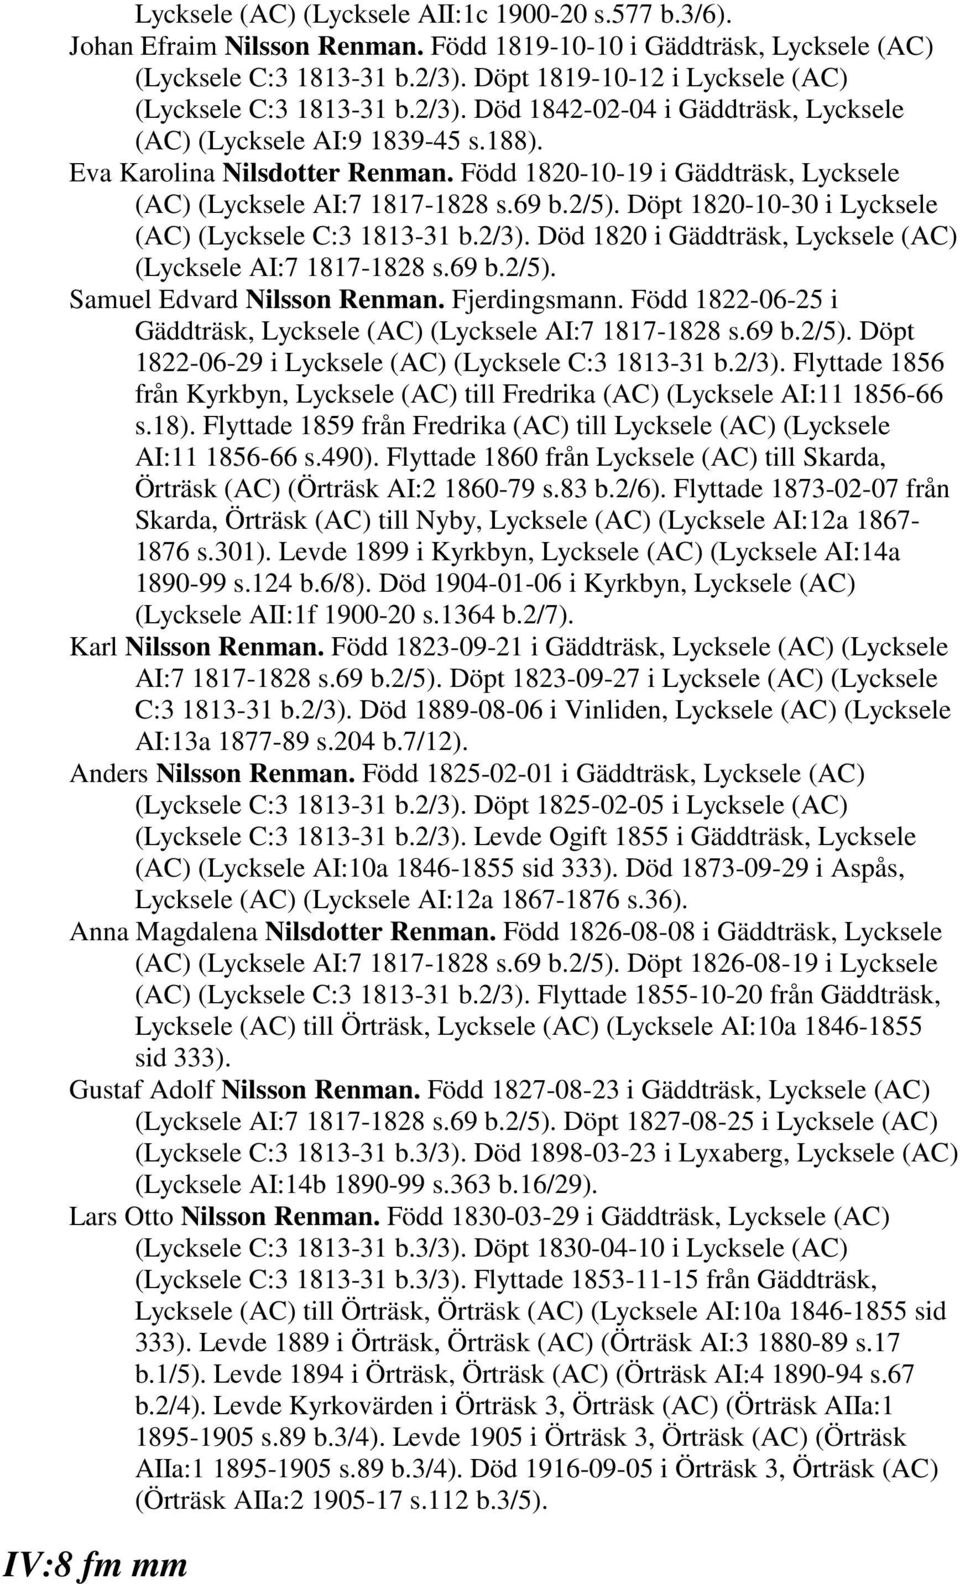 Född 1820-10-19 i Gäddträsk, Lycksele (AC) (Lycksele AI:7 1817-1828 s.69 b.2/5). Döpt 1820-10-30 i Lycksele (AC) (Lycksele C:3 1813-31 b.2/3).